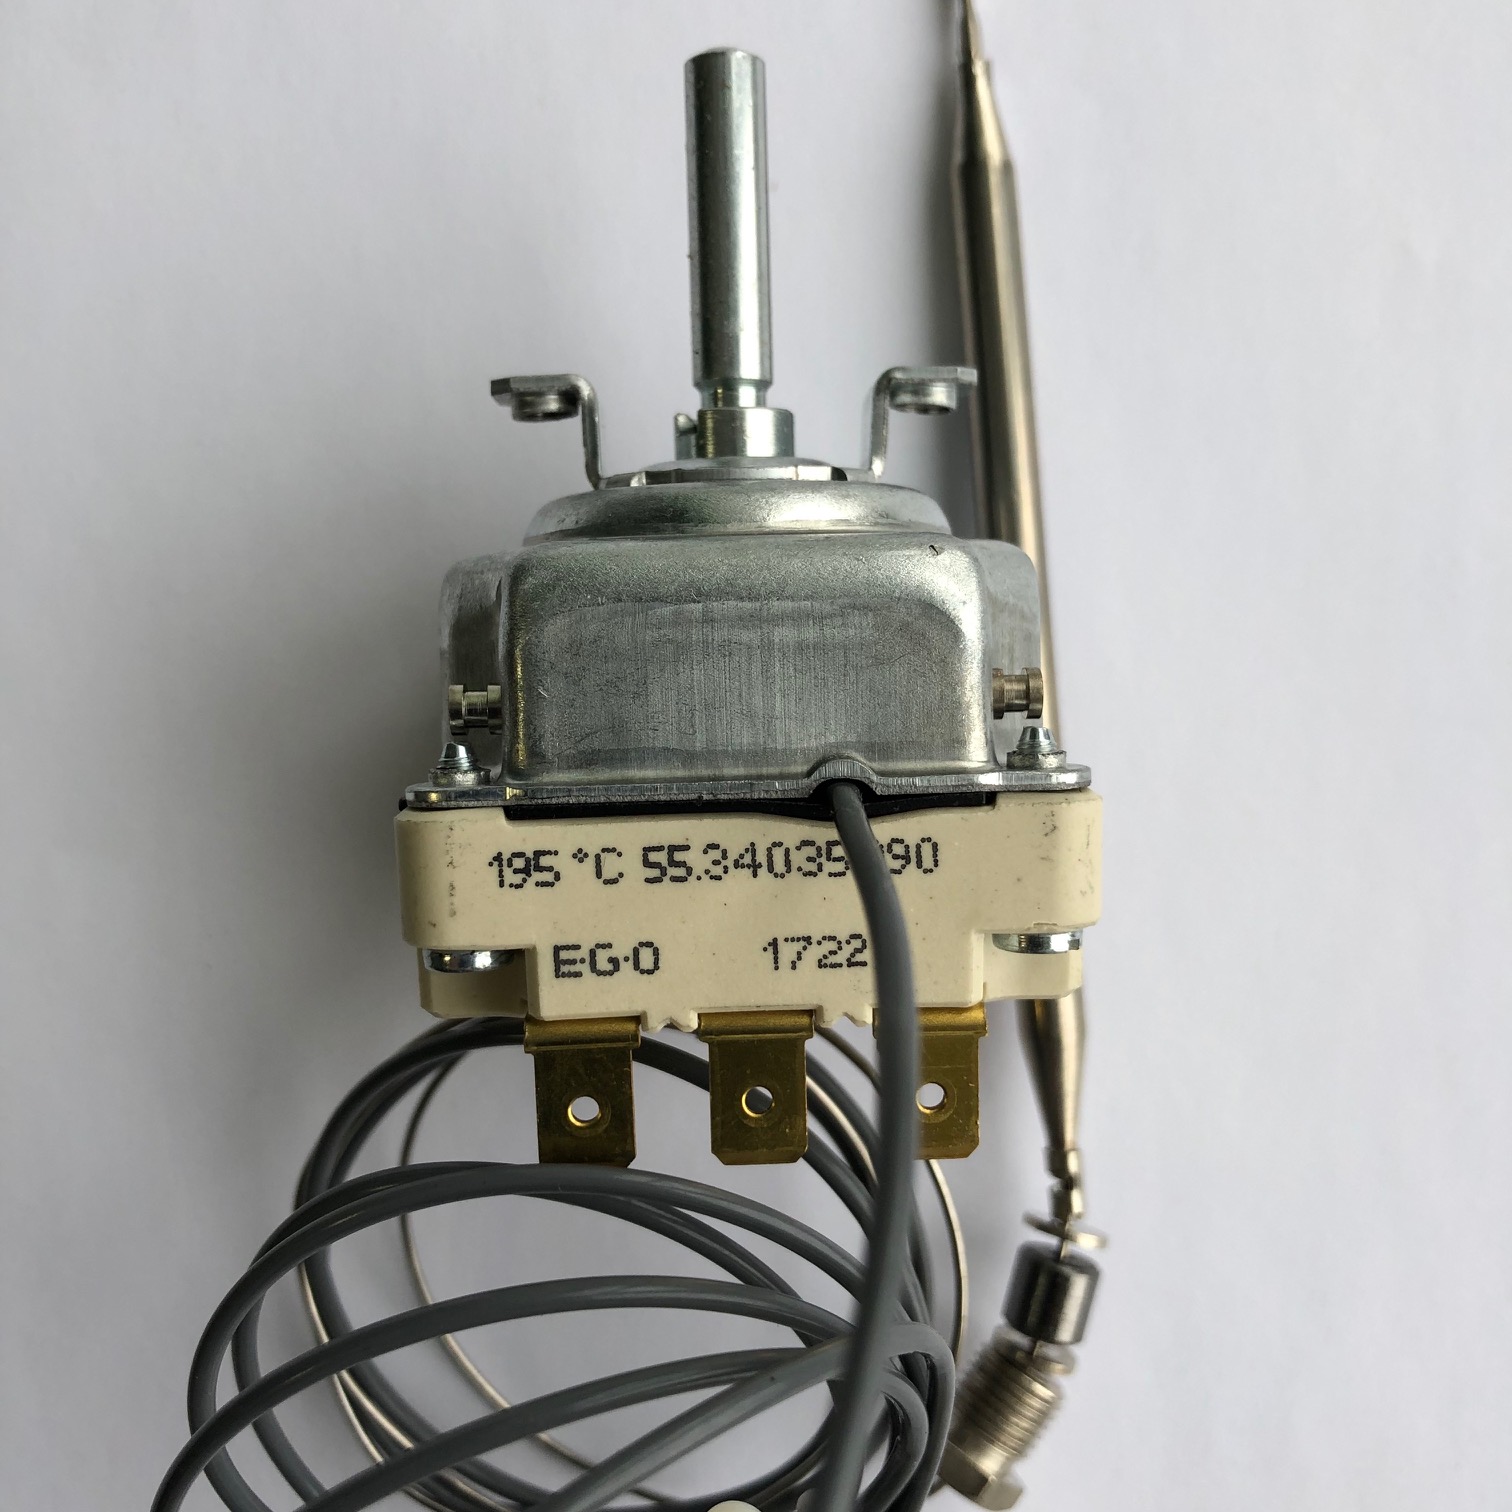 Терморегулятор капиллярный для фритюрницы 195С, 3Р капилляр 1,78 метра 55.34035.090